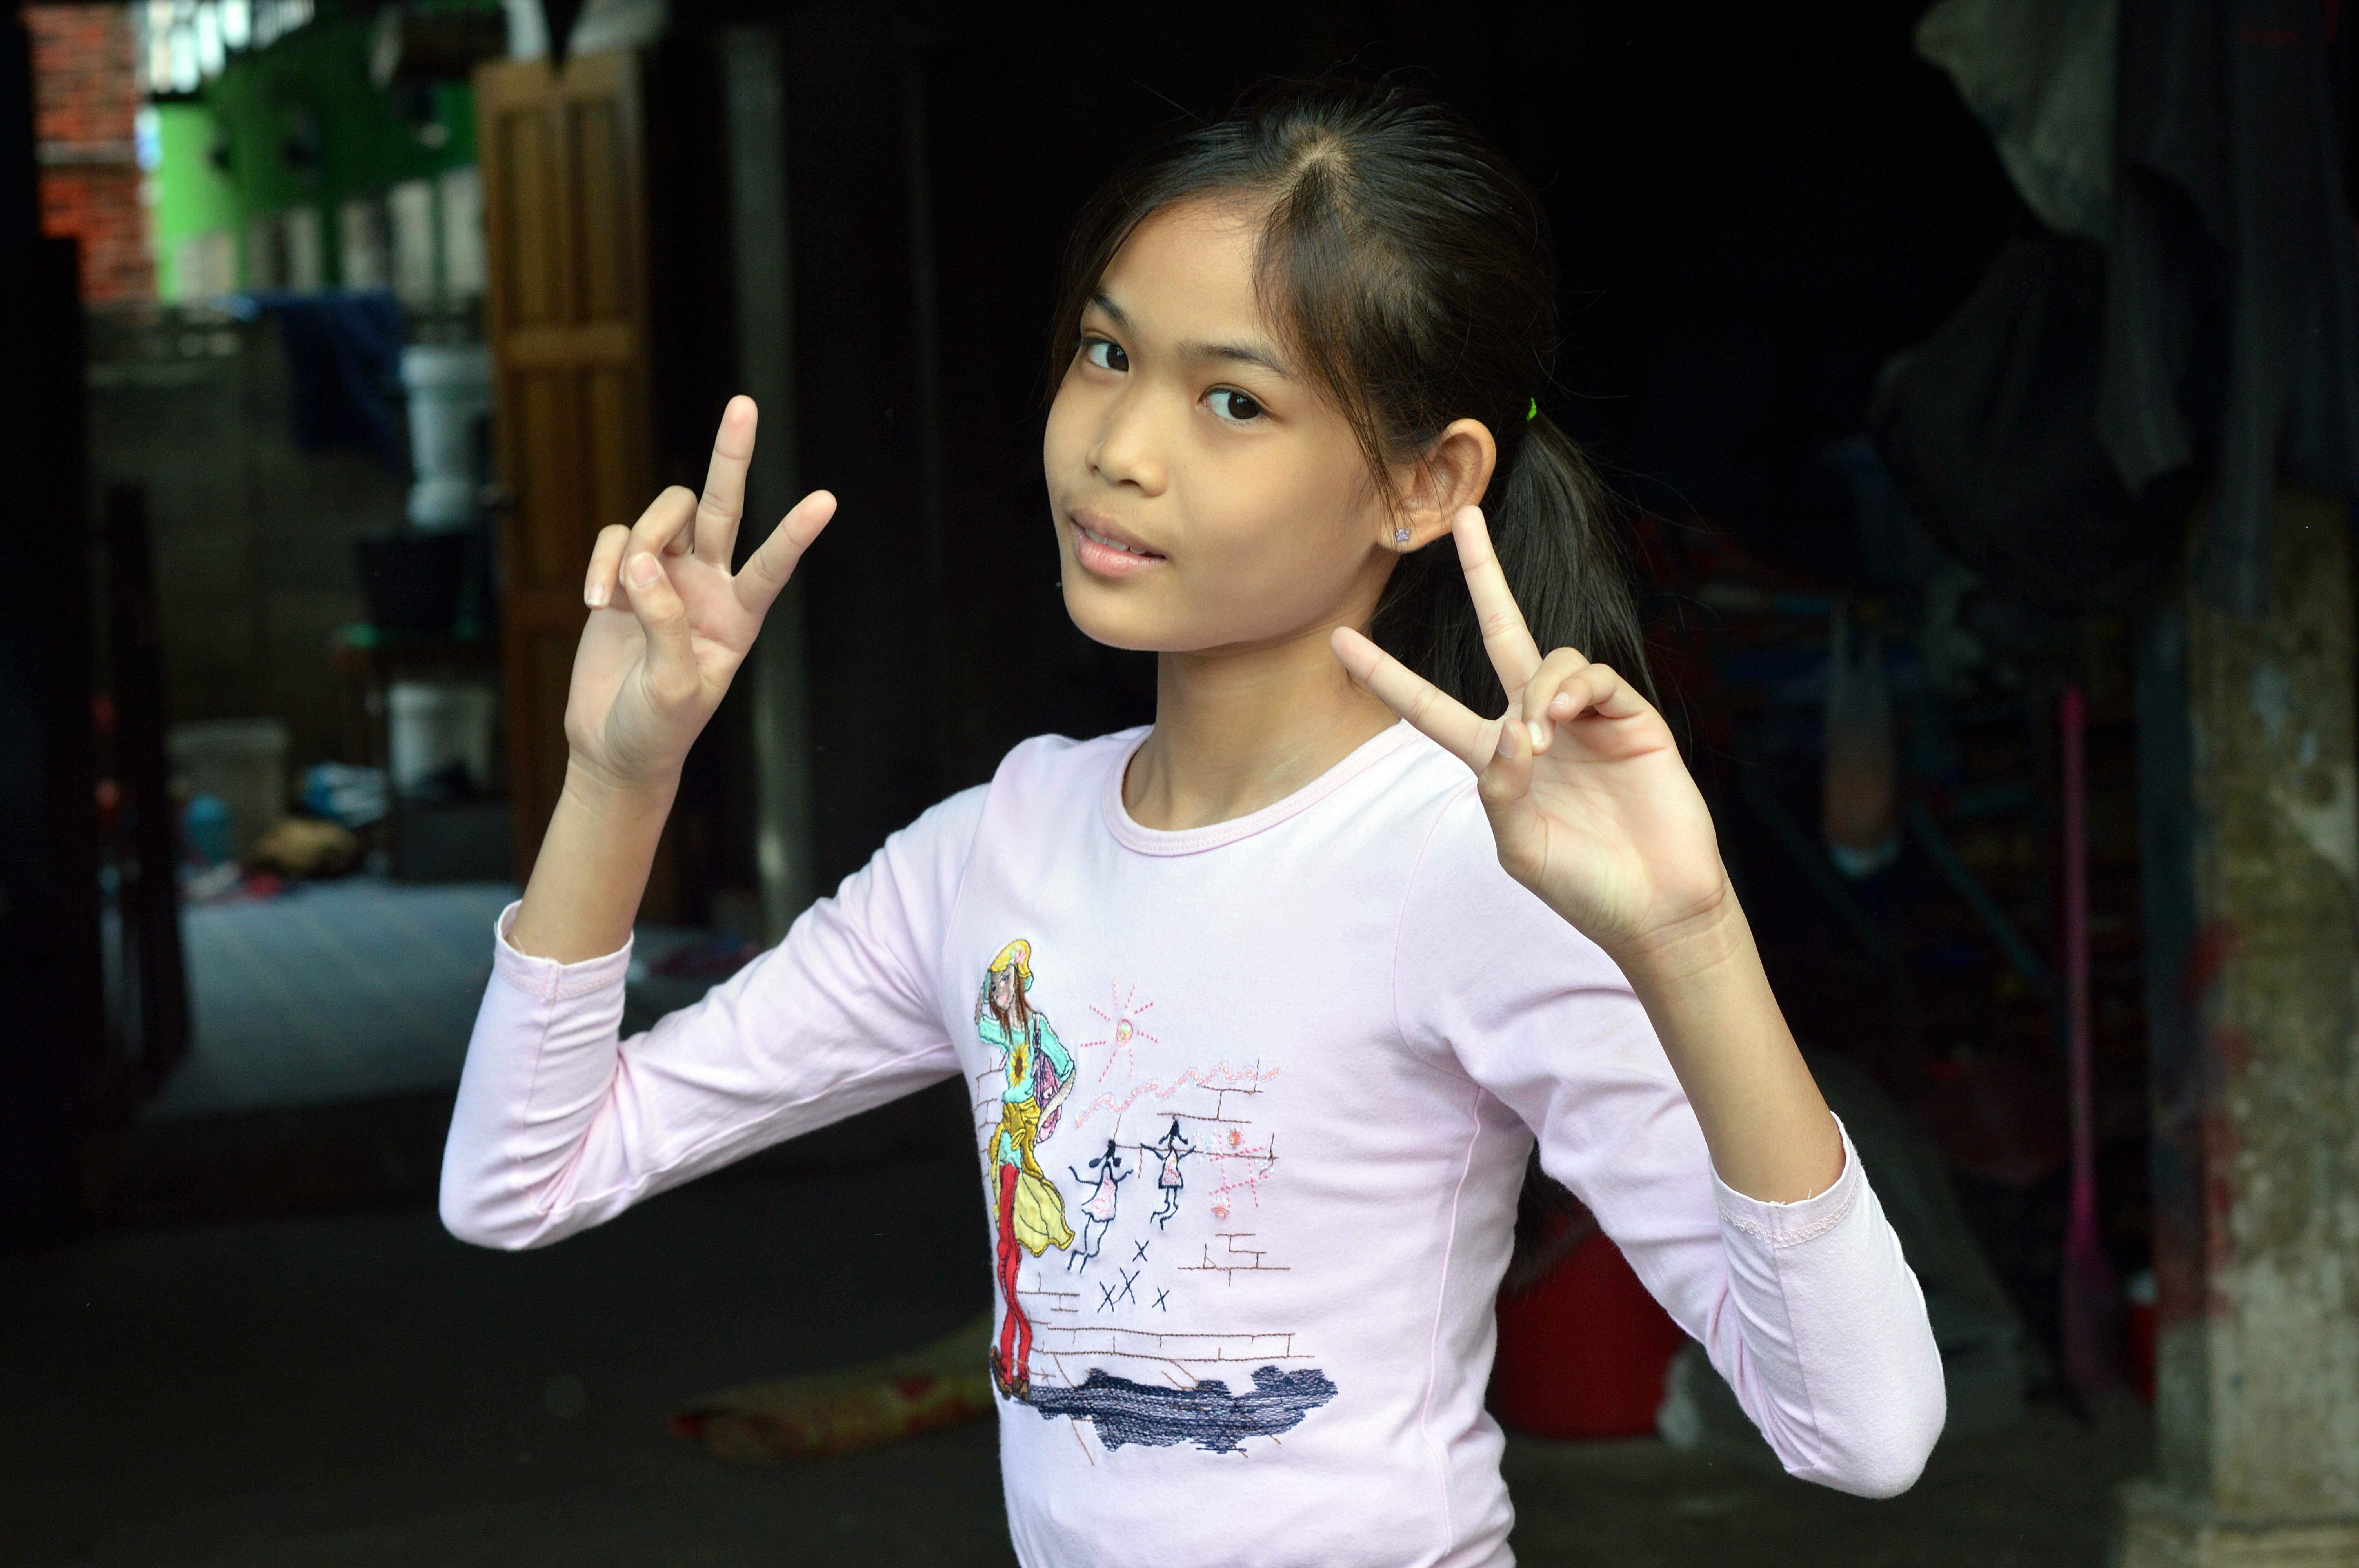 Cute jb forum. Камбоджа подросток девушка. 144 Чан. Тайланд Kiddy. Hmm тайки.